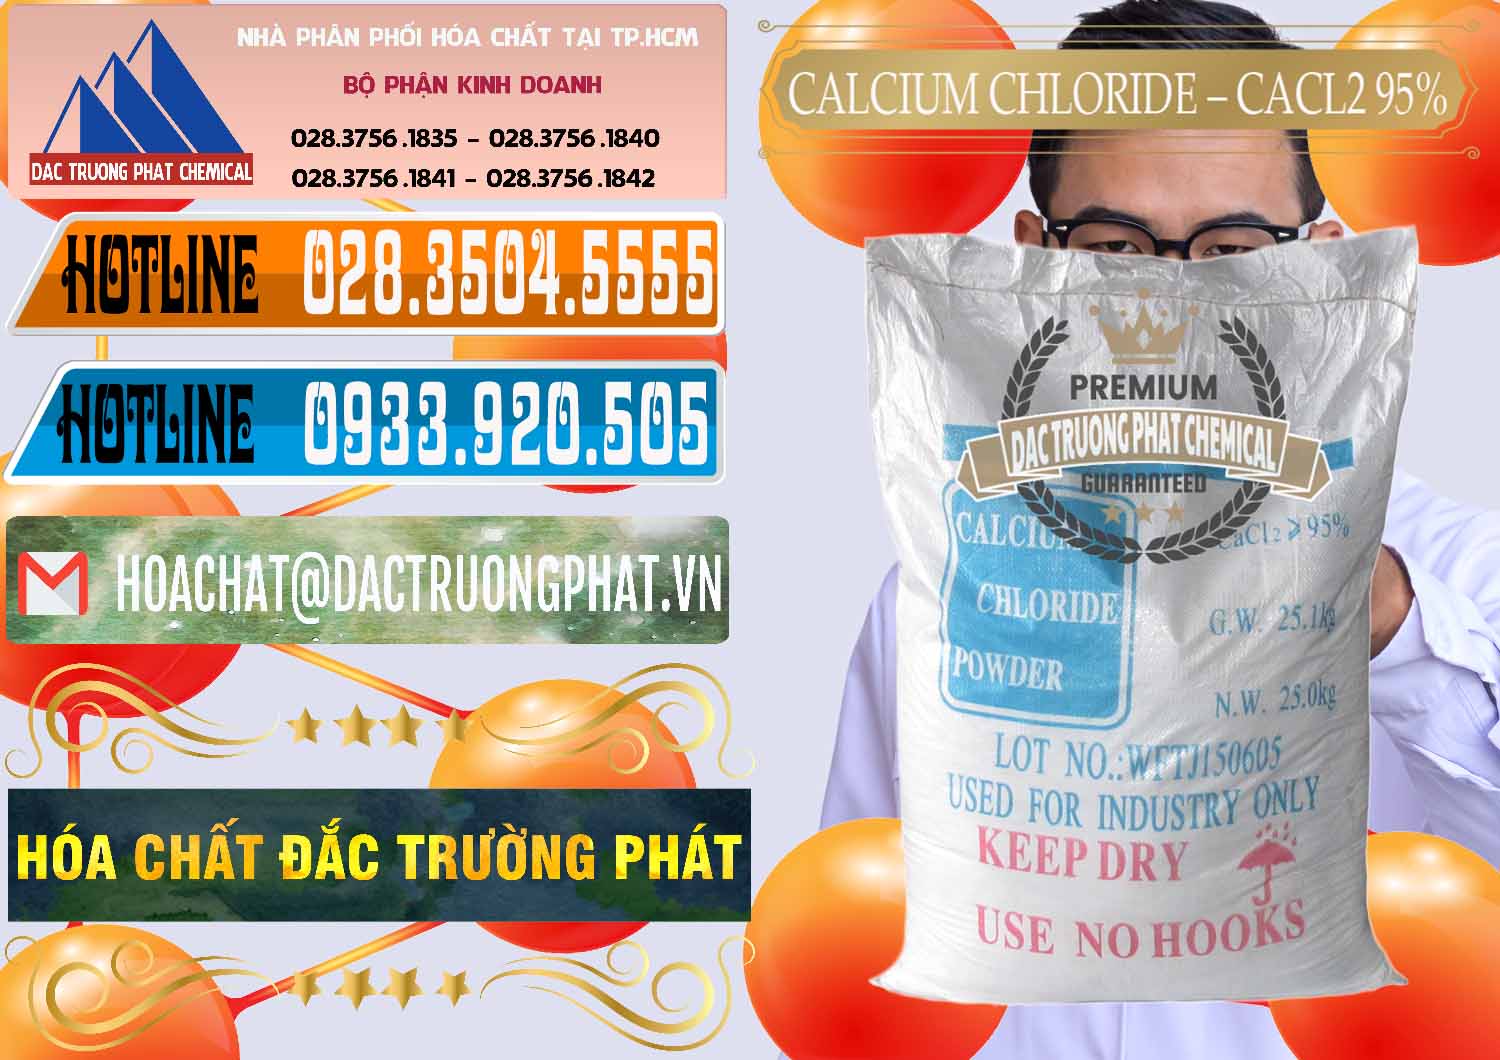 Cty bán - cung cấp CaCl2 – Canxi Clorua 95% Trung Quốc China - 0039 - Nhà cung cấp và phân phối hóa chất tại TP.HCM - stmp.net